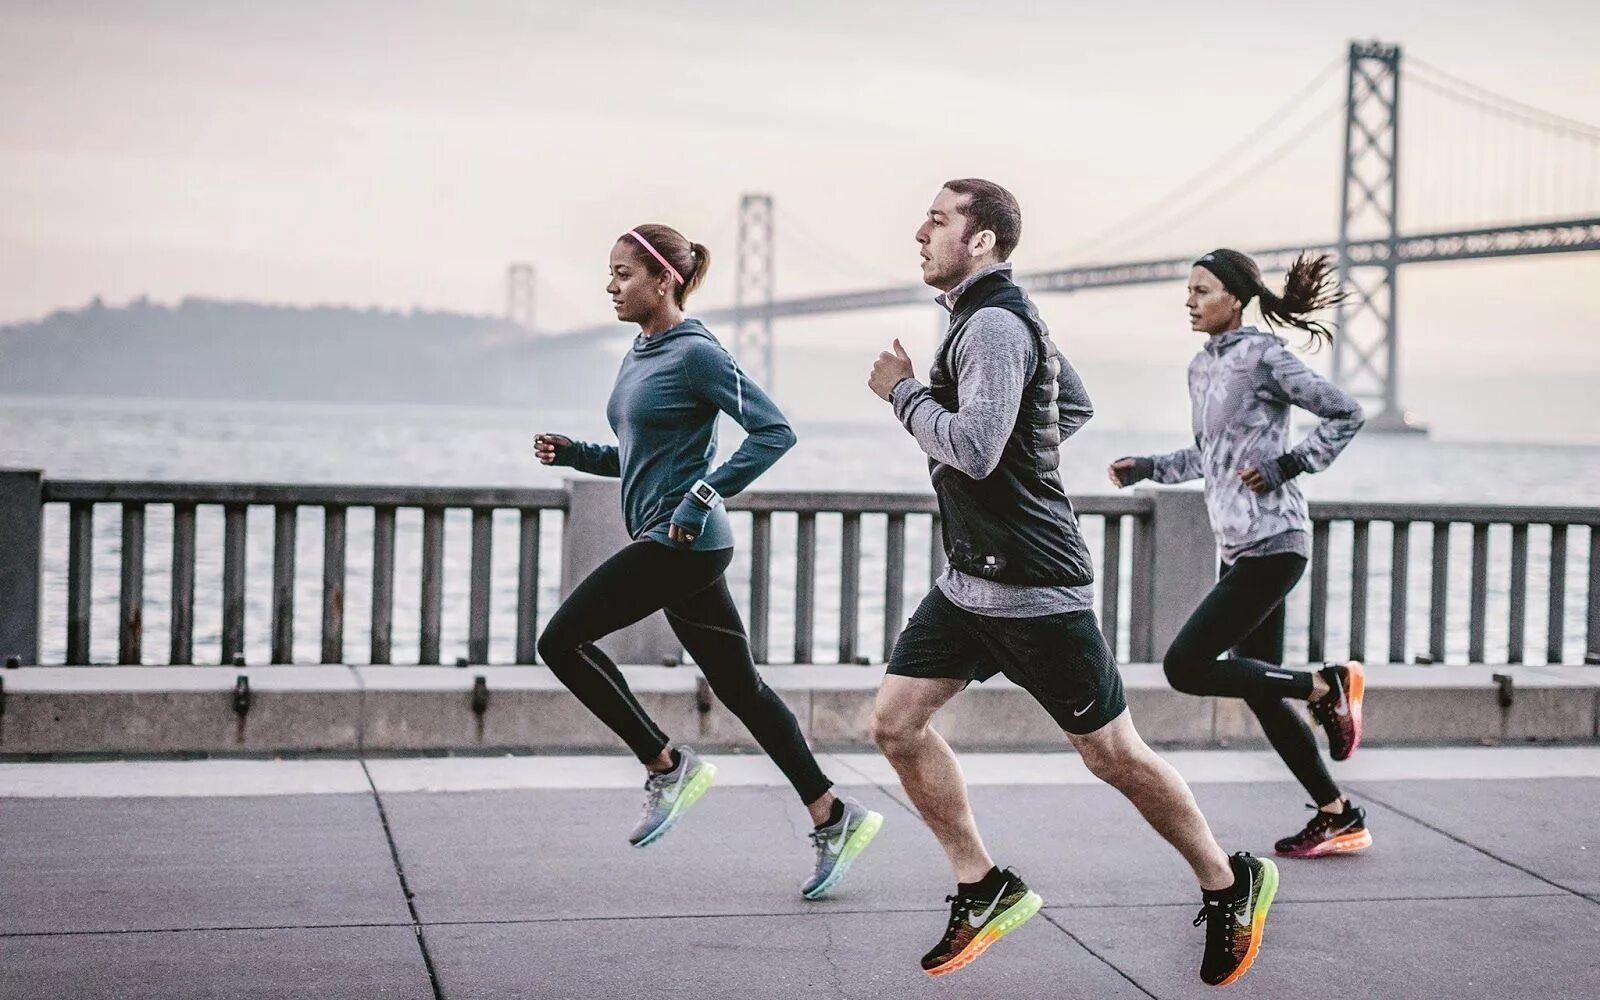 Many of you do sports. Nike Running. Nike Running бег. Занятие спортом. Фотосессия в спортивном стиле.